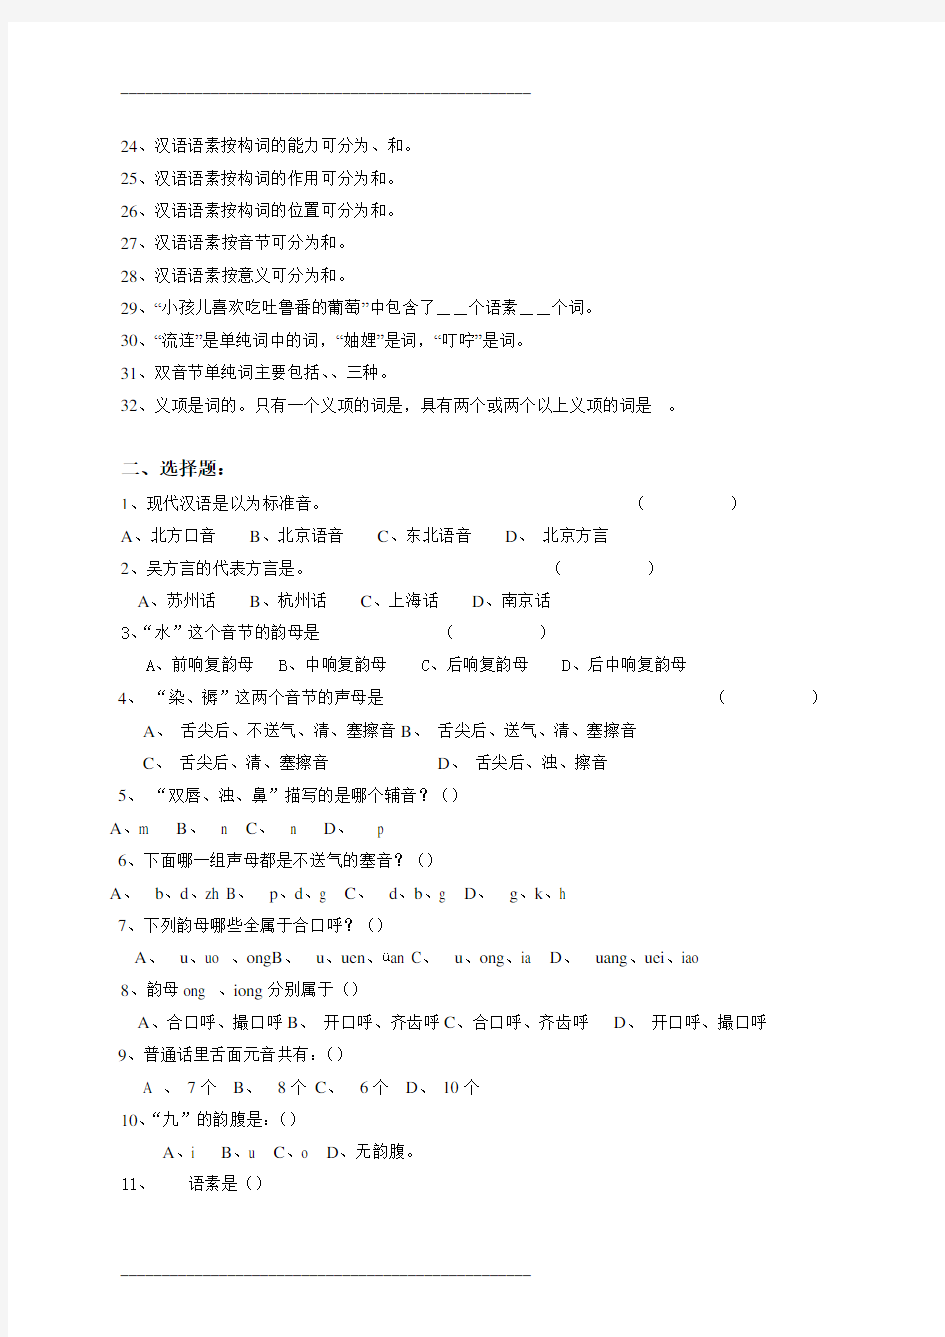 现代汉语综合练习(上)